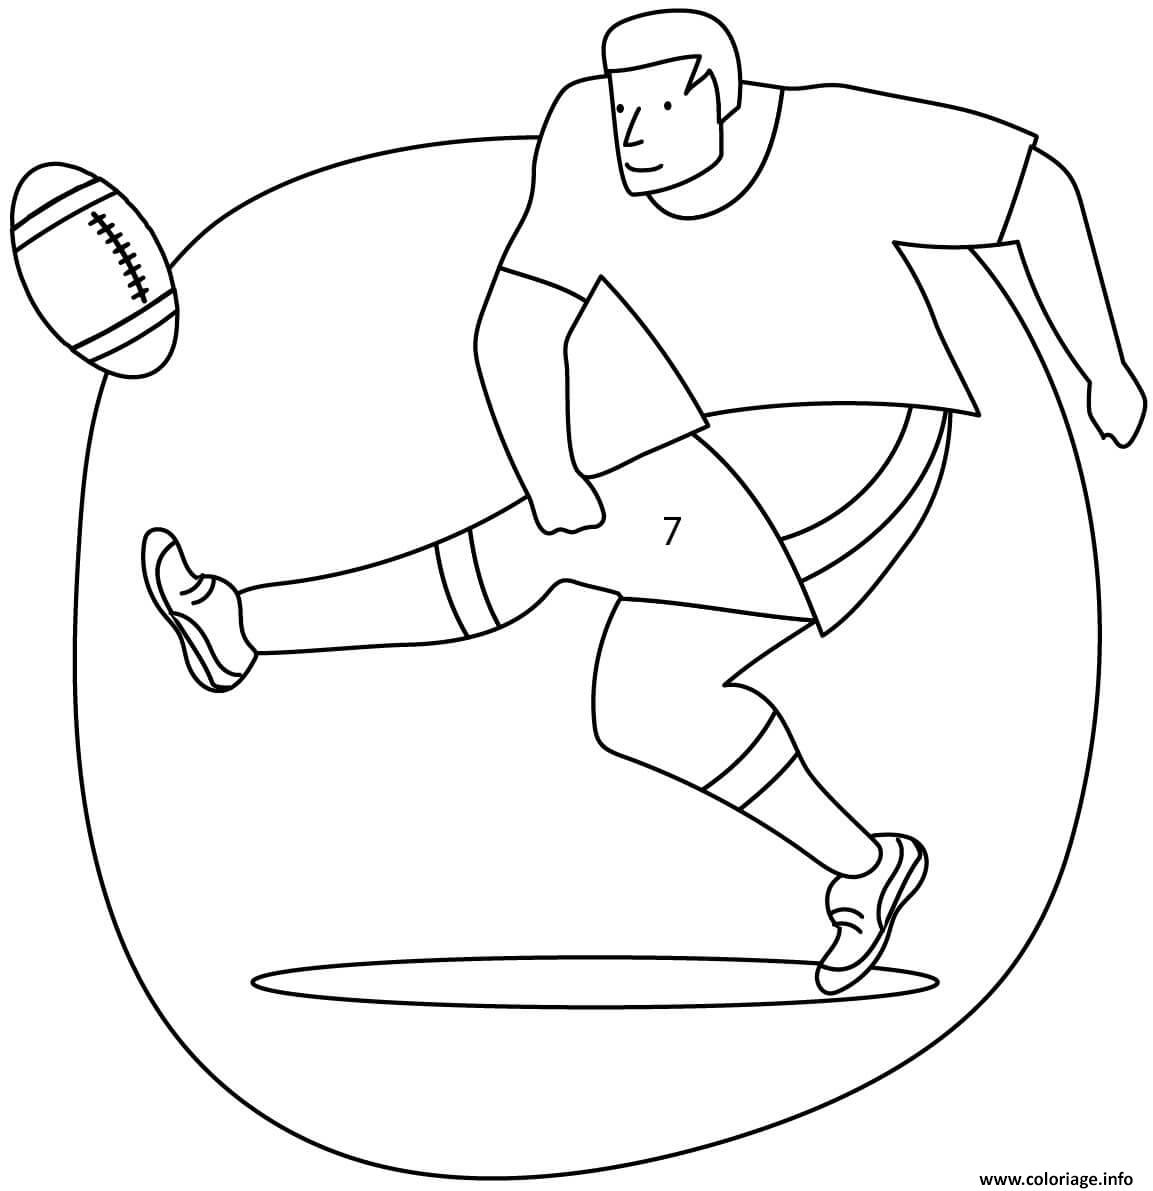 Dessin rugby joueur qui frappe le ballon Coloriage Gratuit à Imprimer